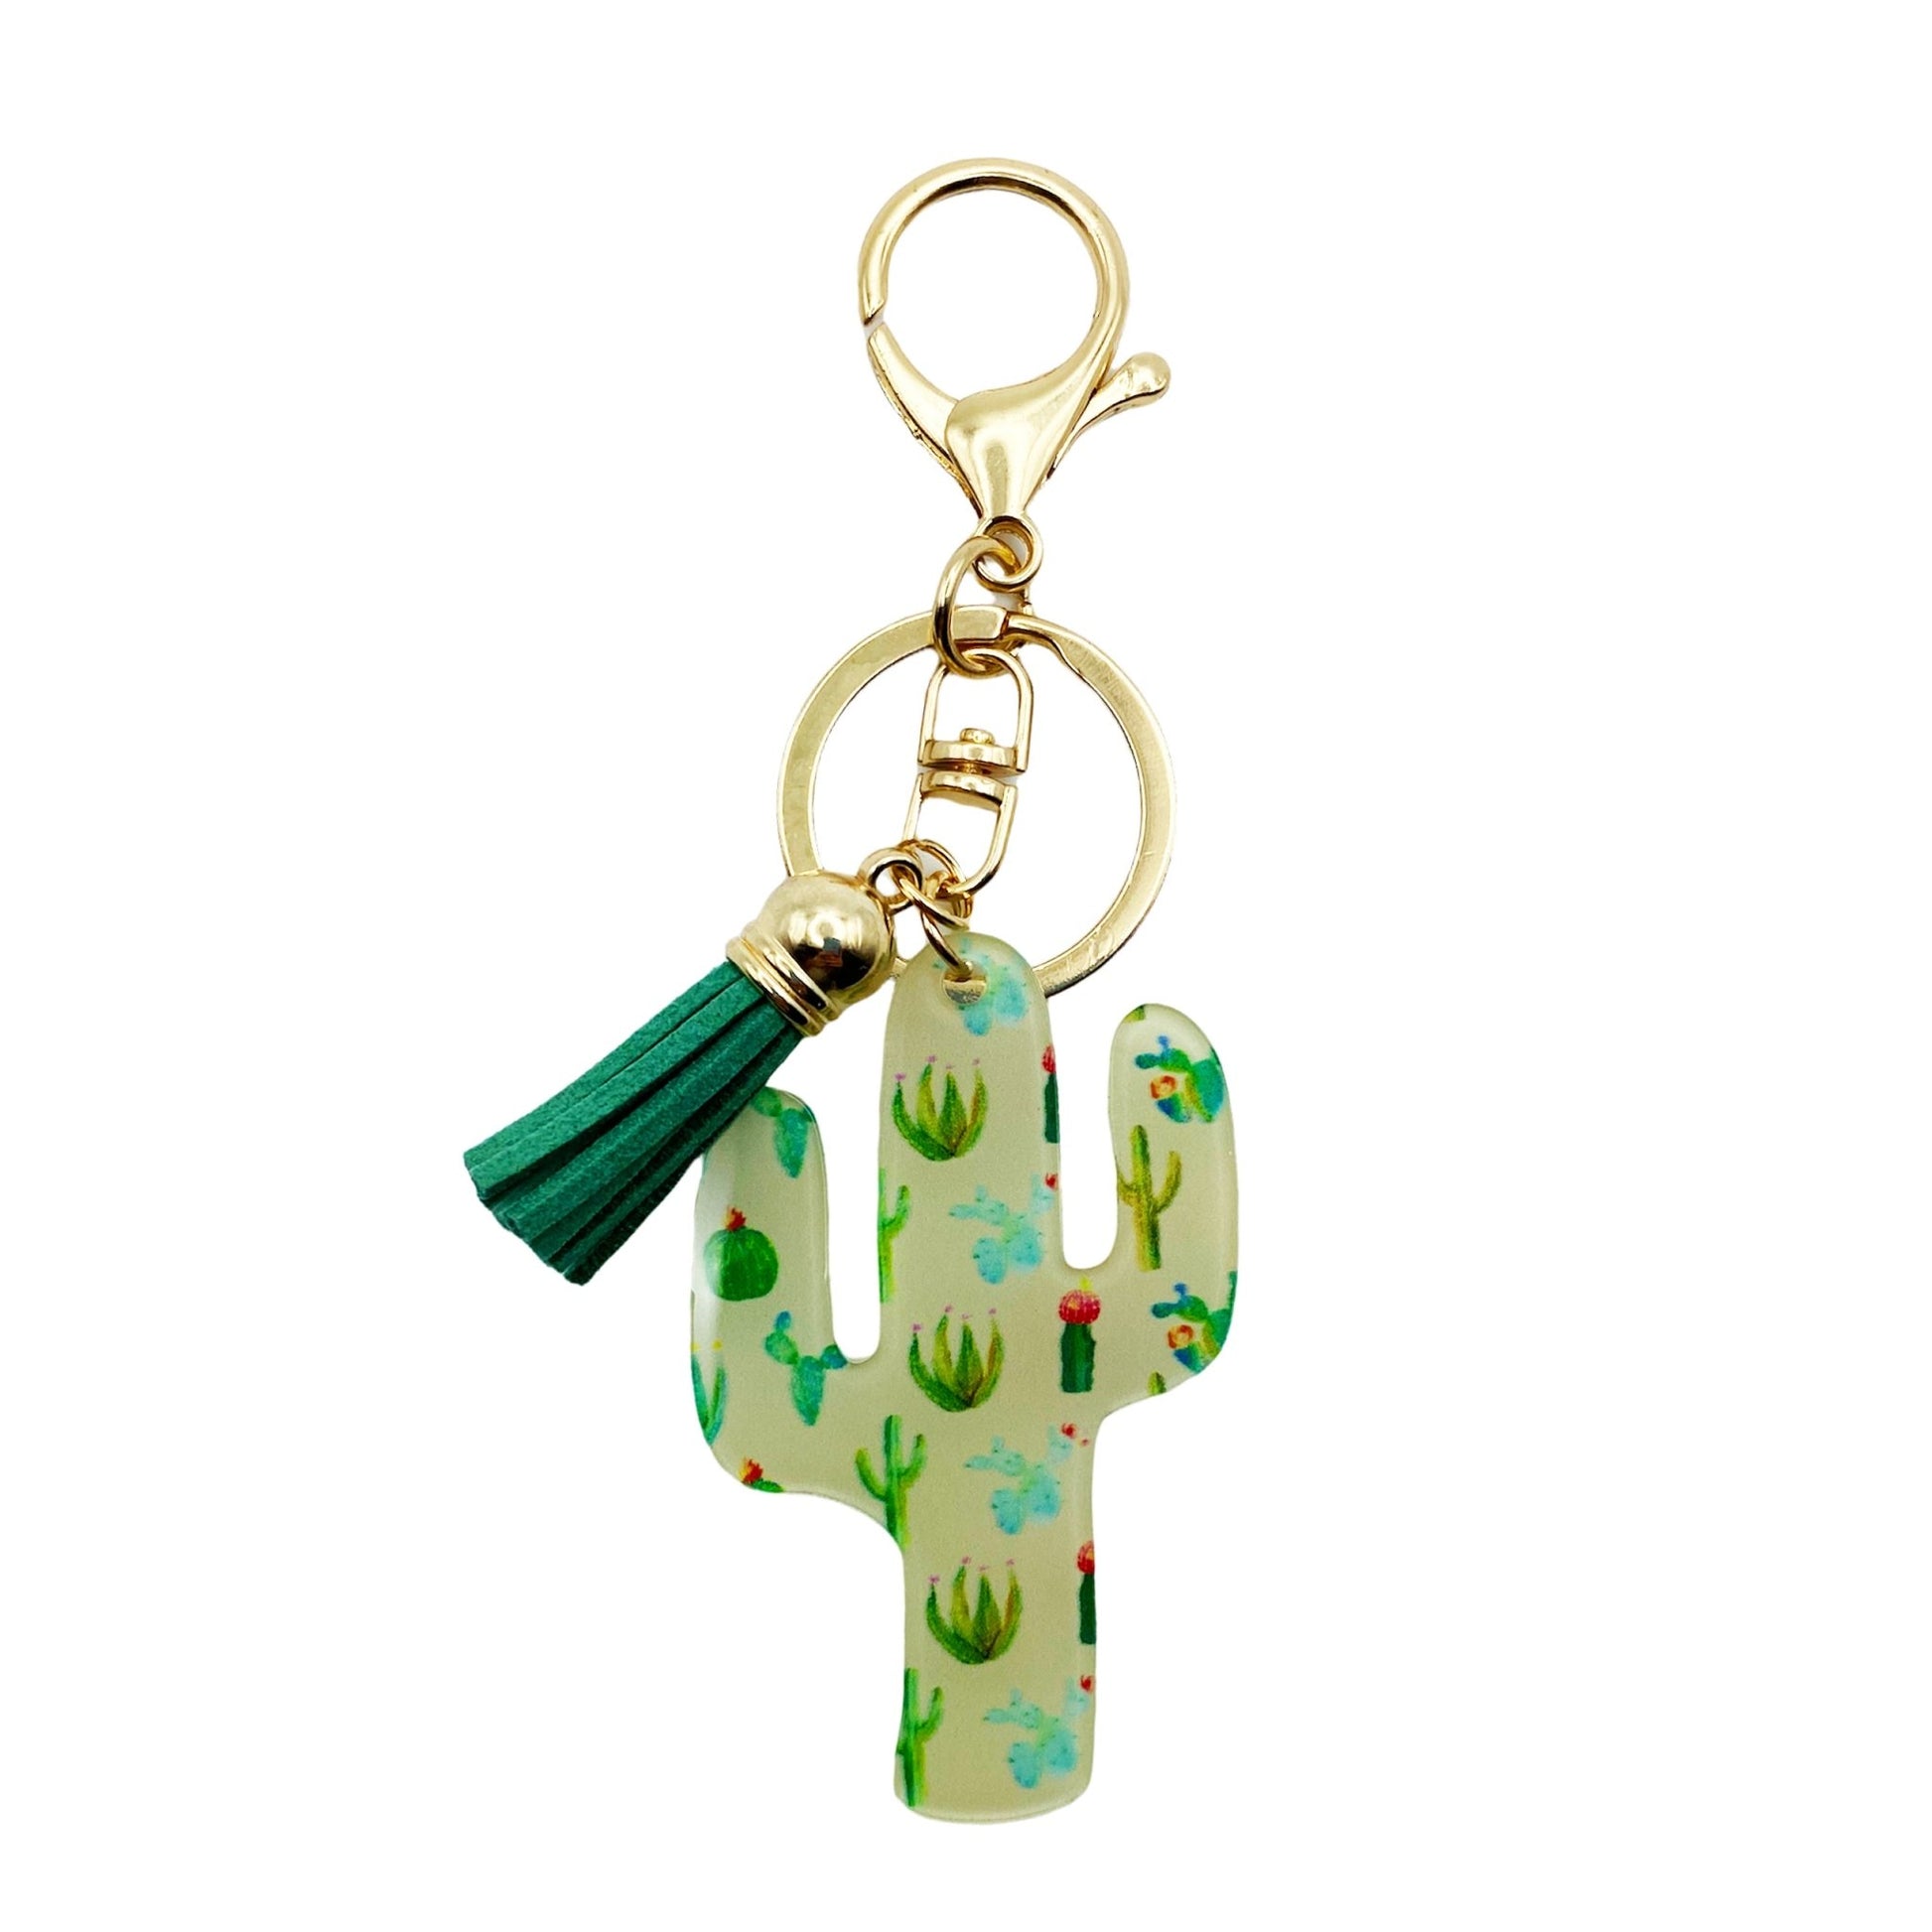 Cactus Garden Acrylic Bag Charm Keychain - The Farmhouse AZ